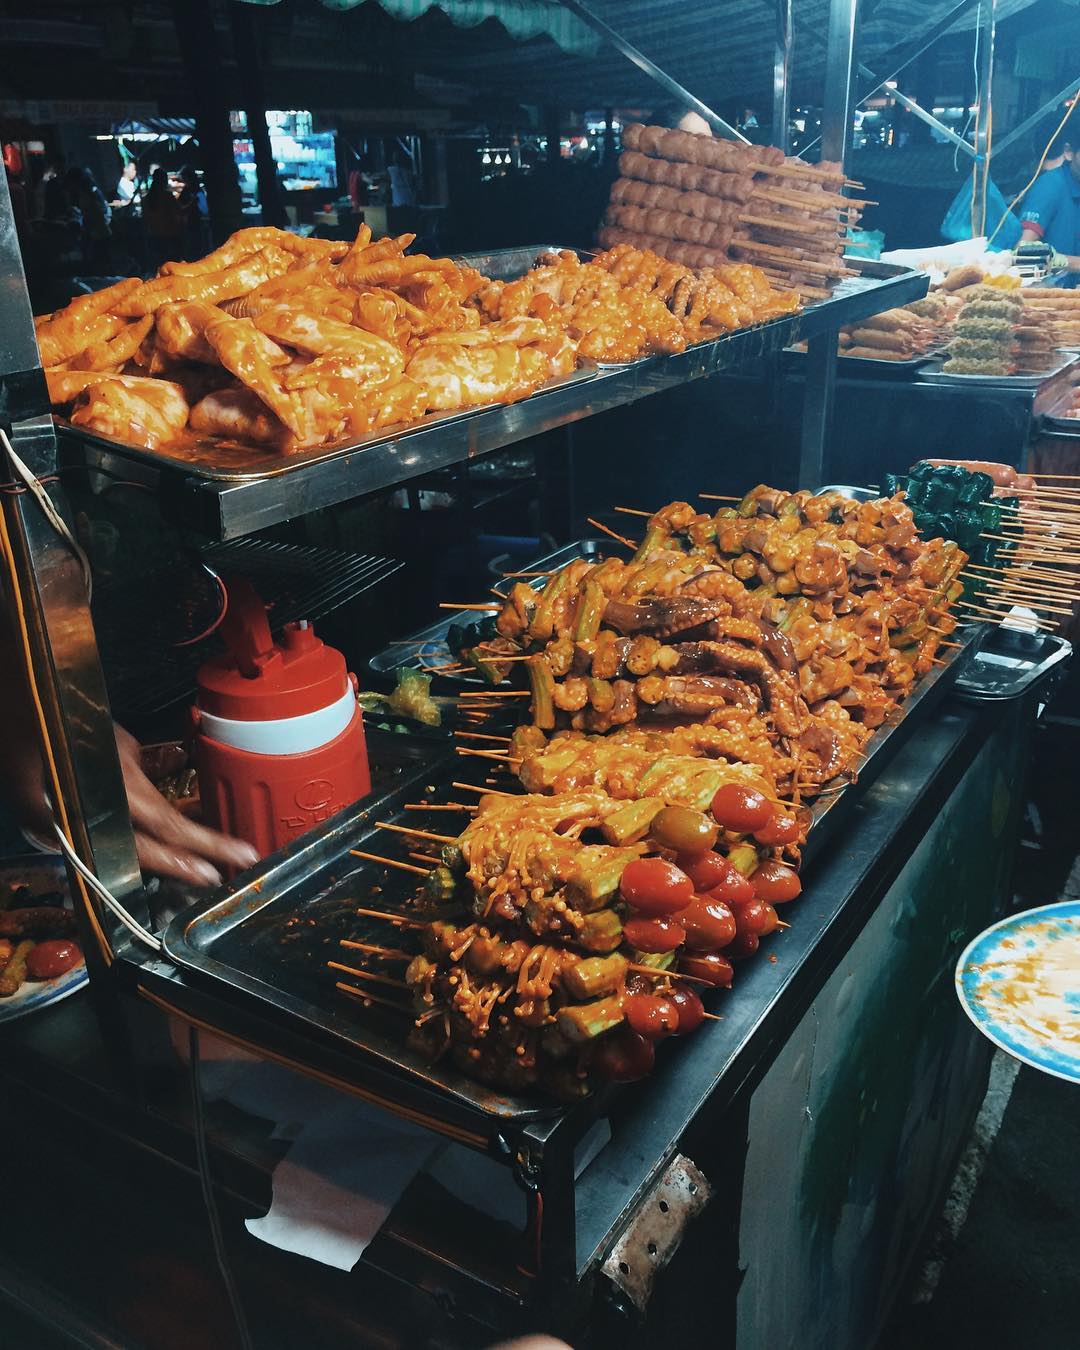 Lạc lối với “thiên đường ẩm thực” đa sắc màu ở chợ đêm Cần Thơ